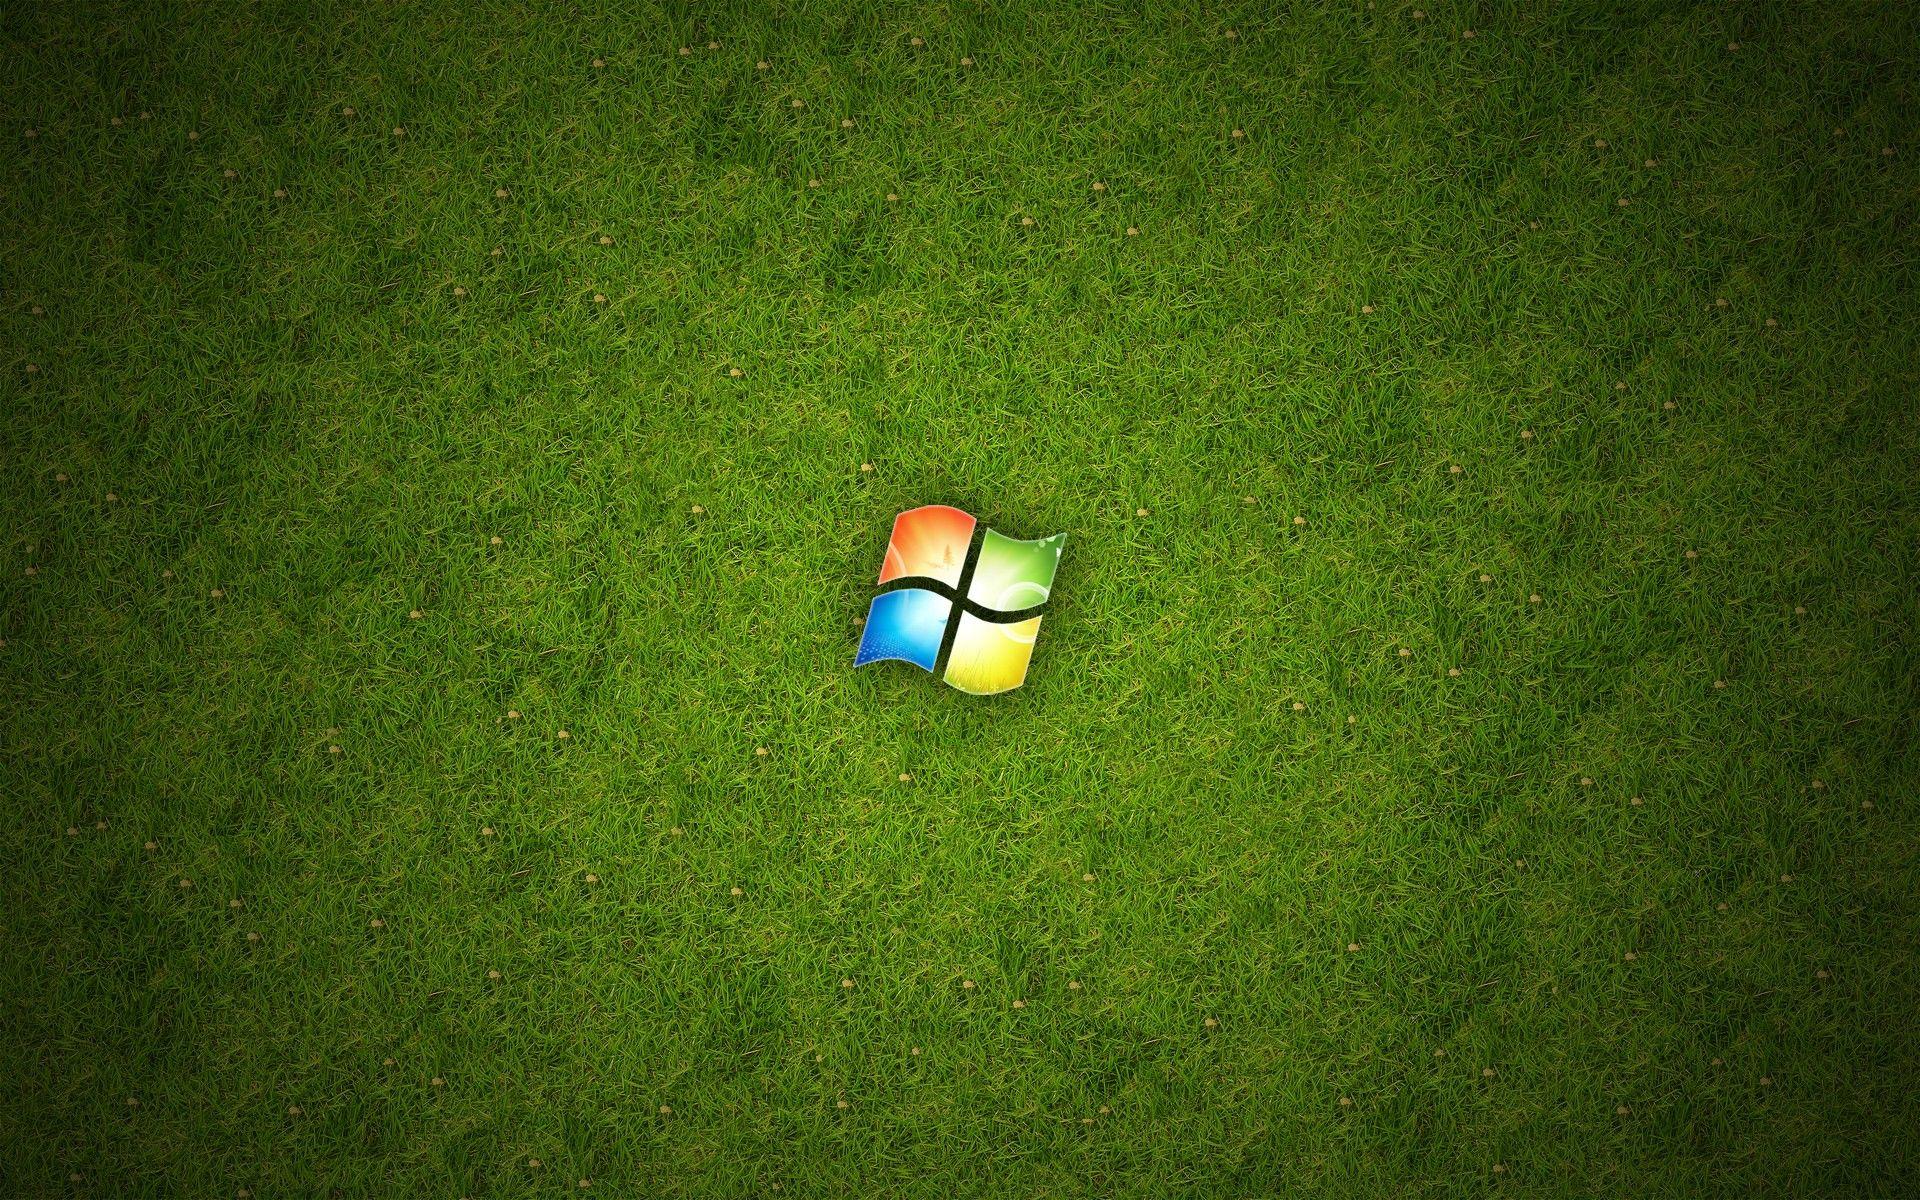 That S A Green Ball Logo - Wallpaper : grass, logo, green, technology, Microsoft Windows, ball ...